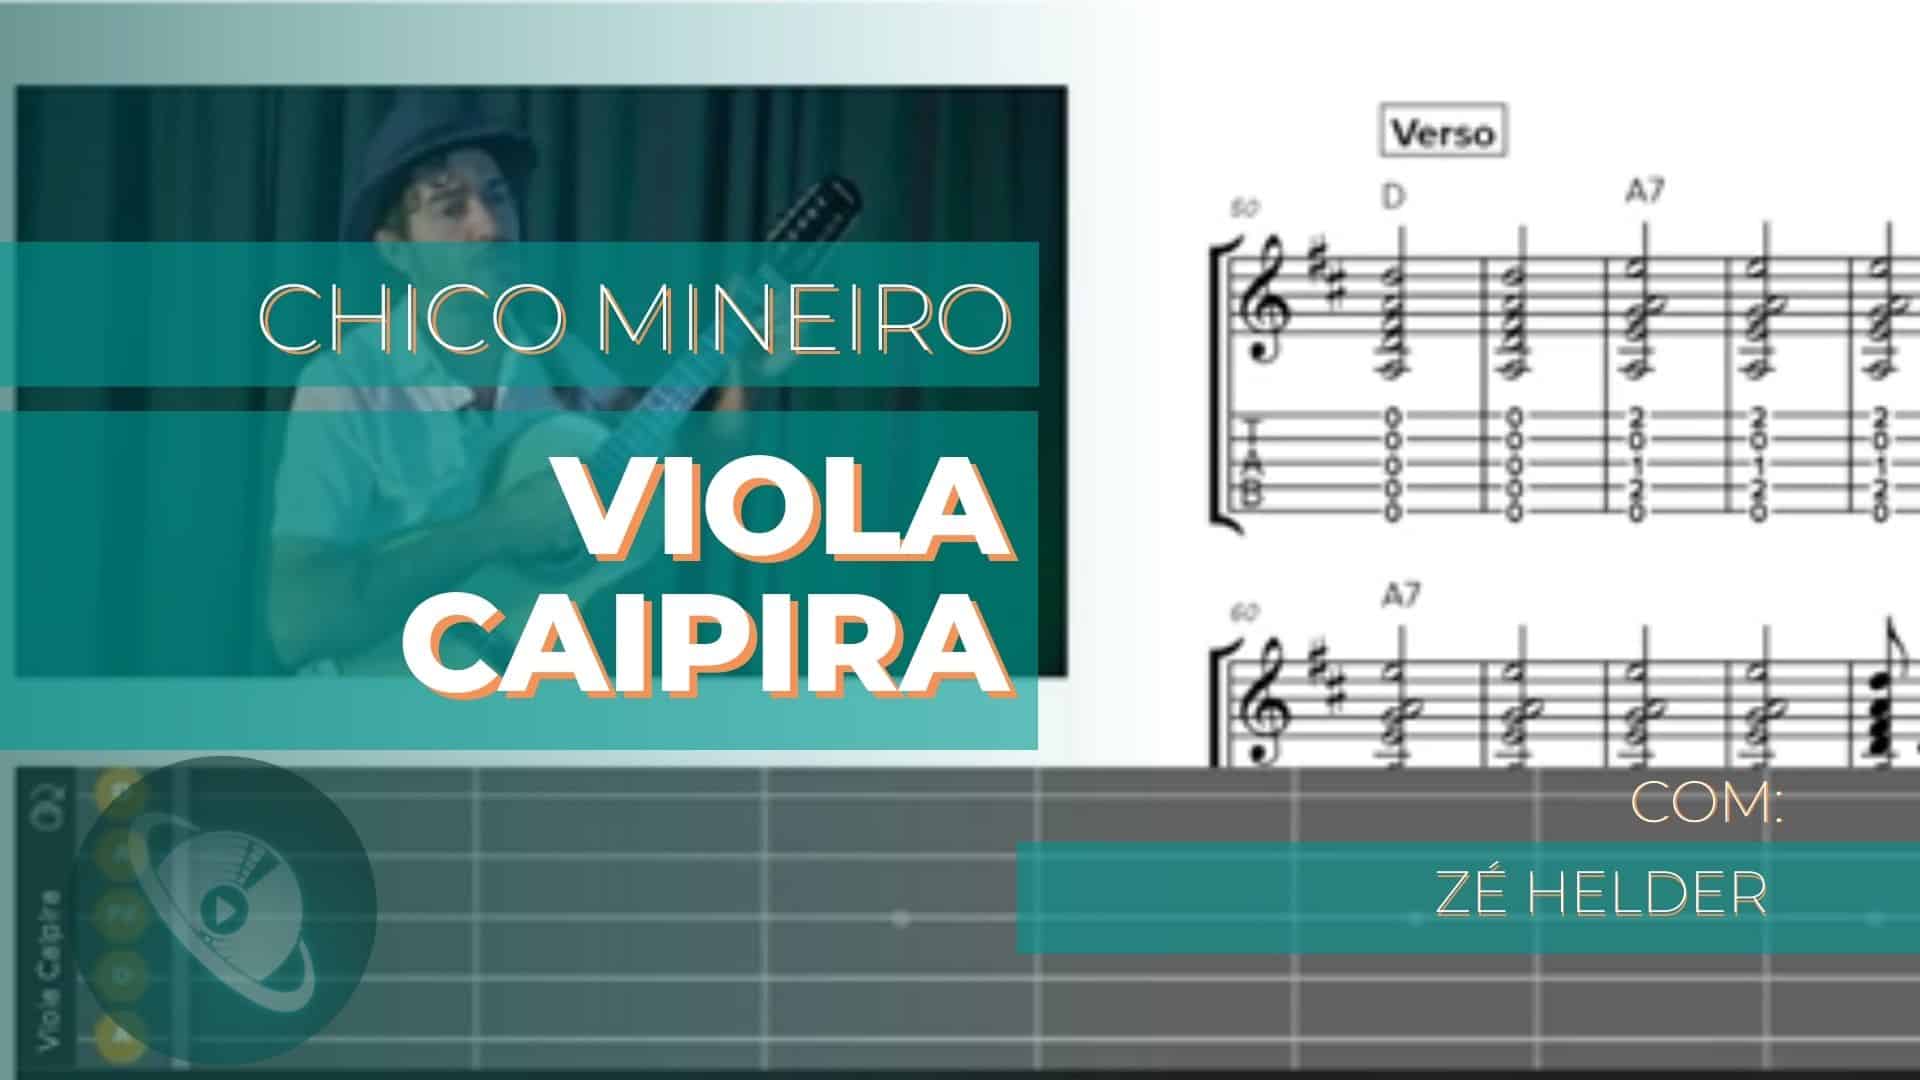 Tonico e Tinoco | Como tocar Chico Mineiro na viola caipira com cifra e tablatura